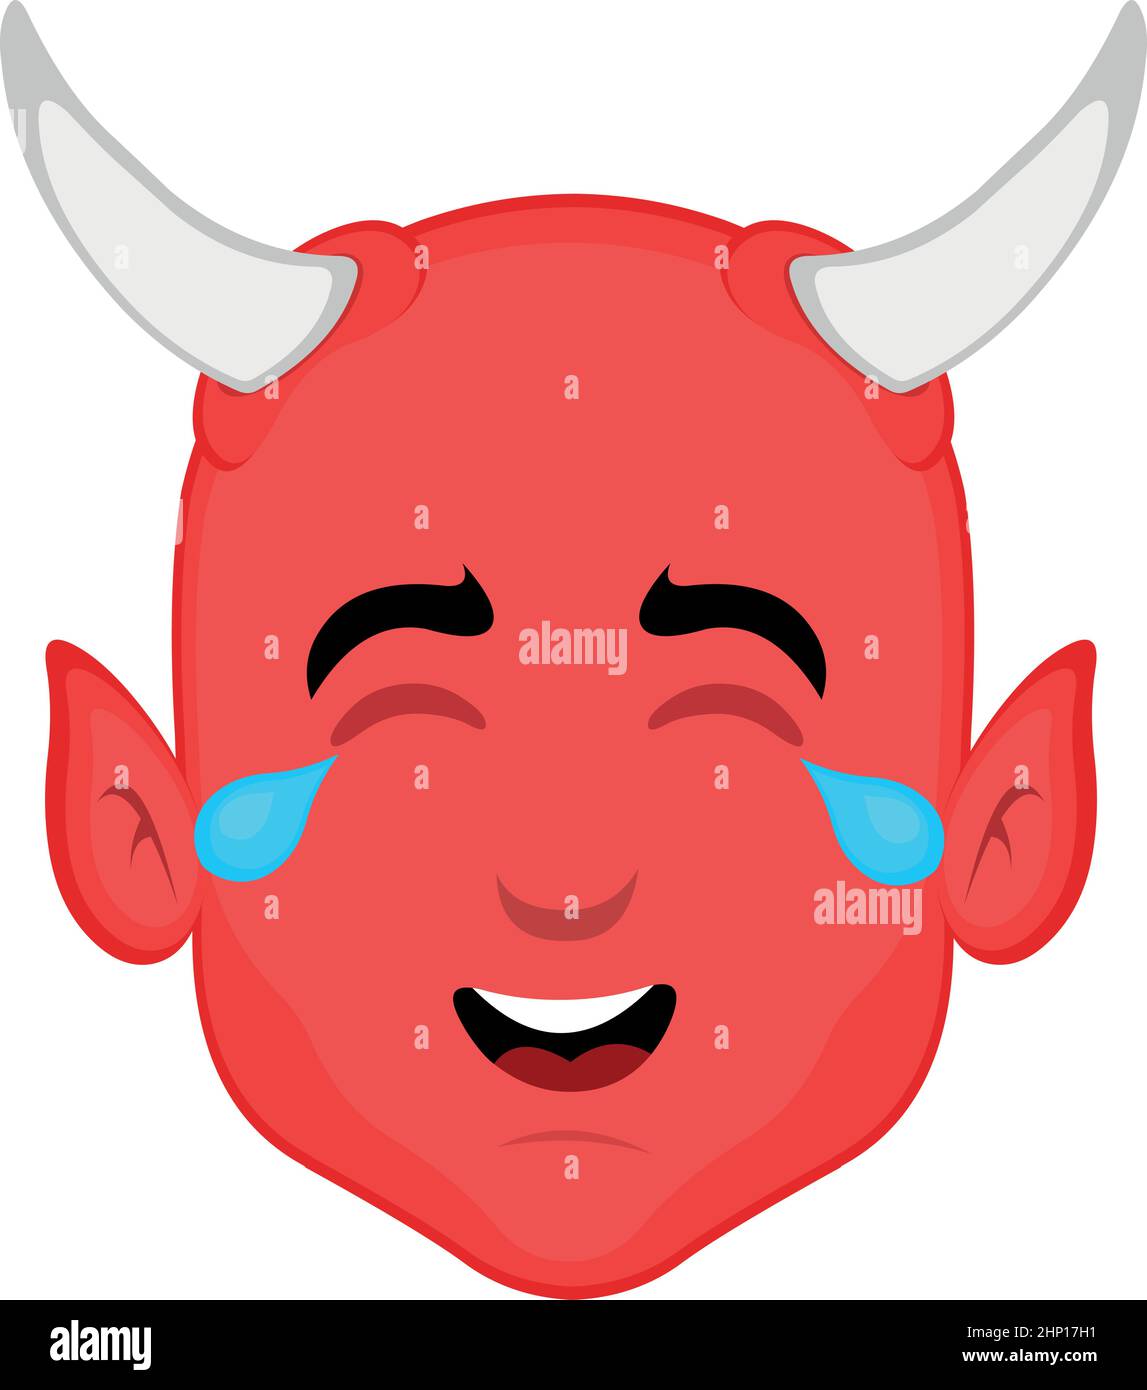 Illustration vectorielle du visage d'un diable de bande dessinée avec une expression heureuse et des larmes de rire Illustration de Vecteur